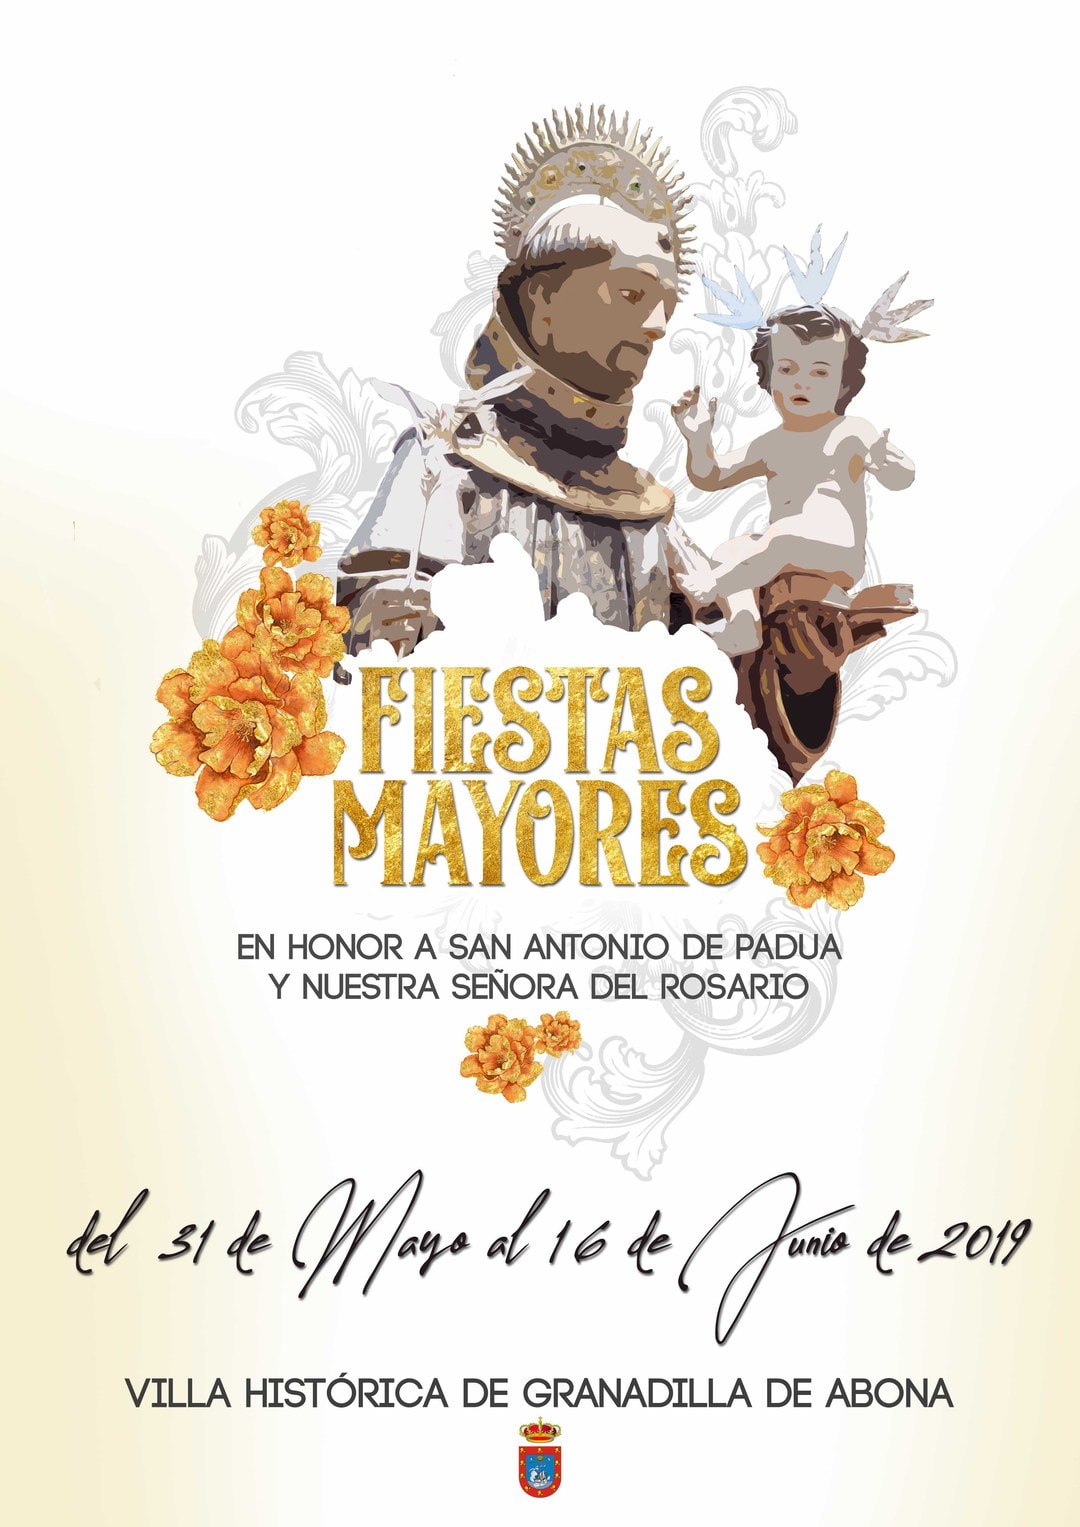 Las ‘Fiestas Mayores en honor a San Antonio de Padua’ 2019, del 31 de mayo al 16 de junio